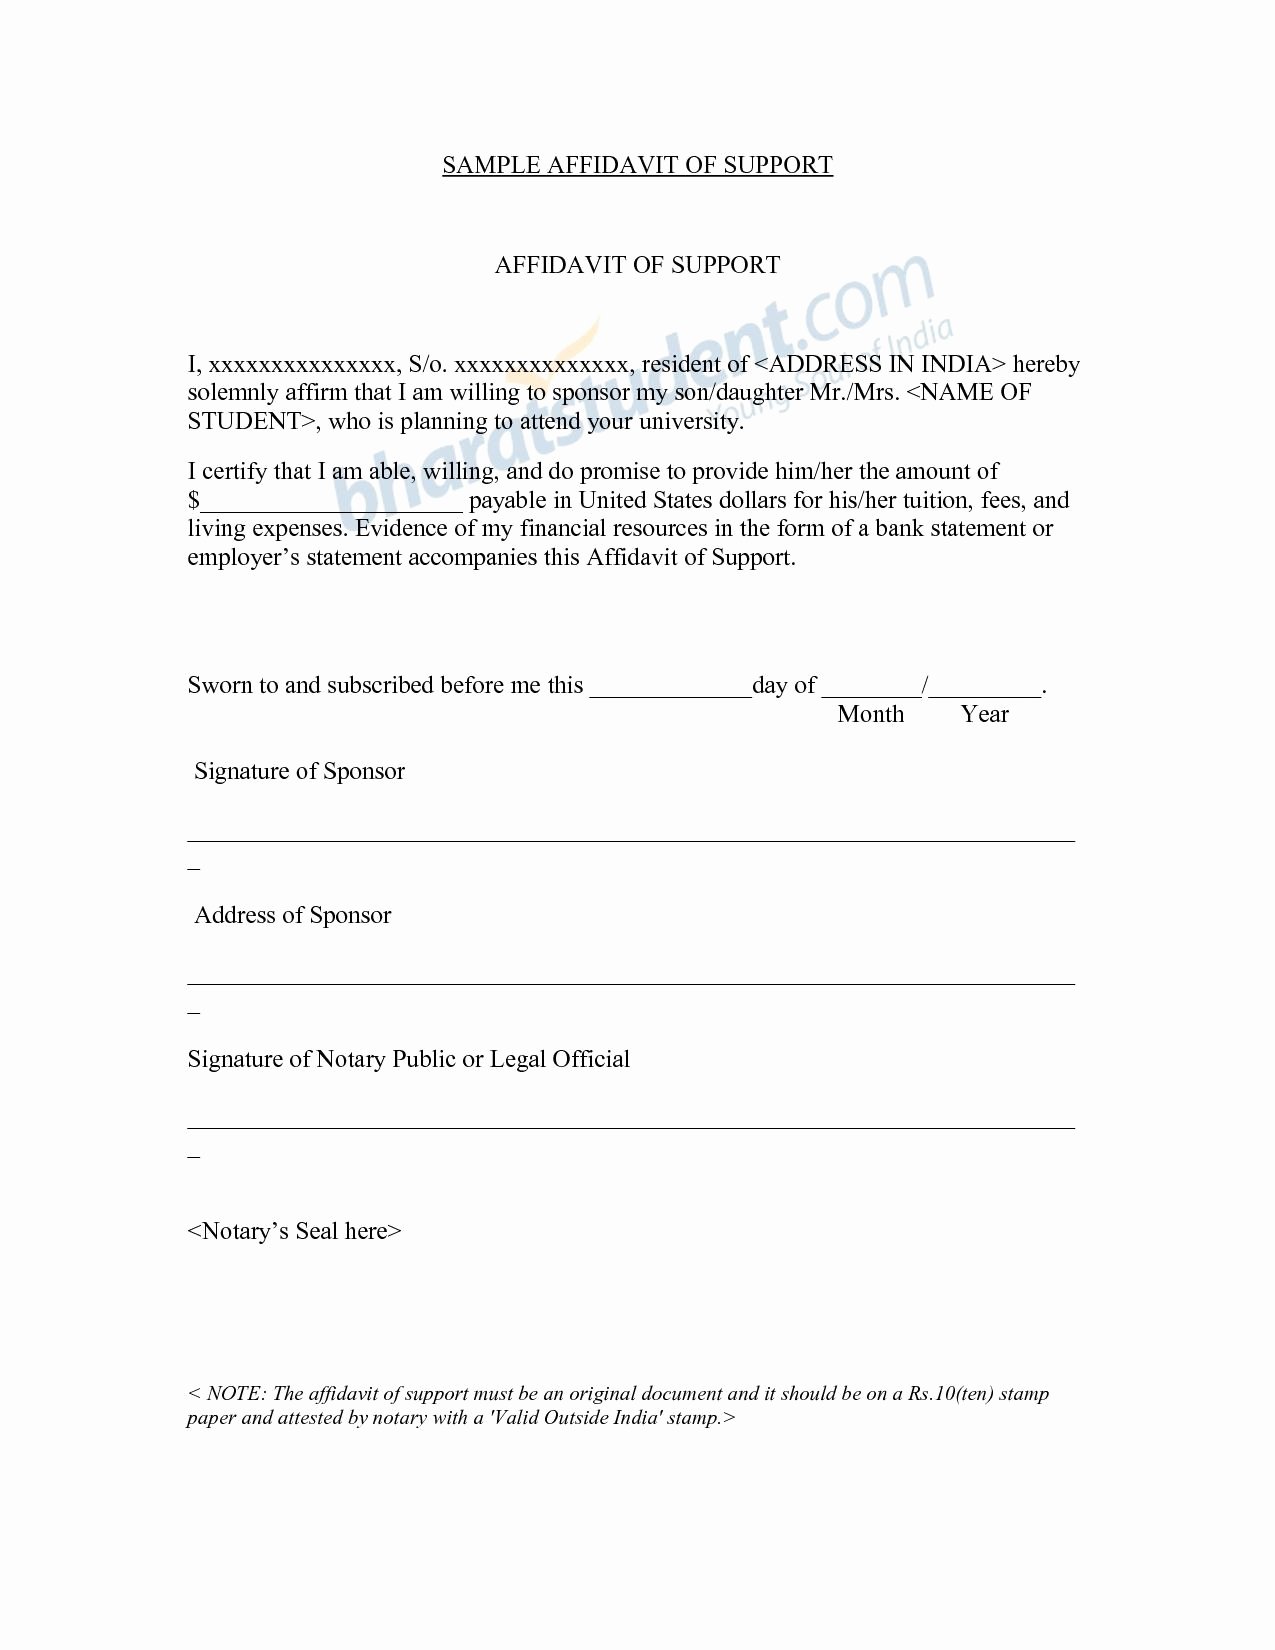 Affidavit Of Support Sample Letter Pdf Elegant Affidavit Letter Template Bluemooncatering